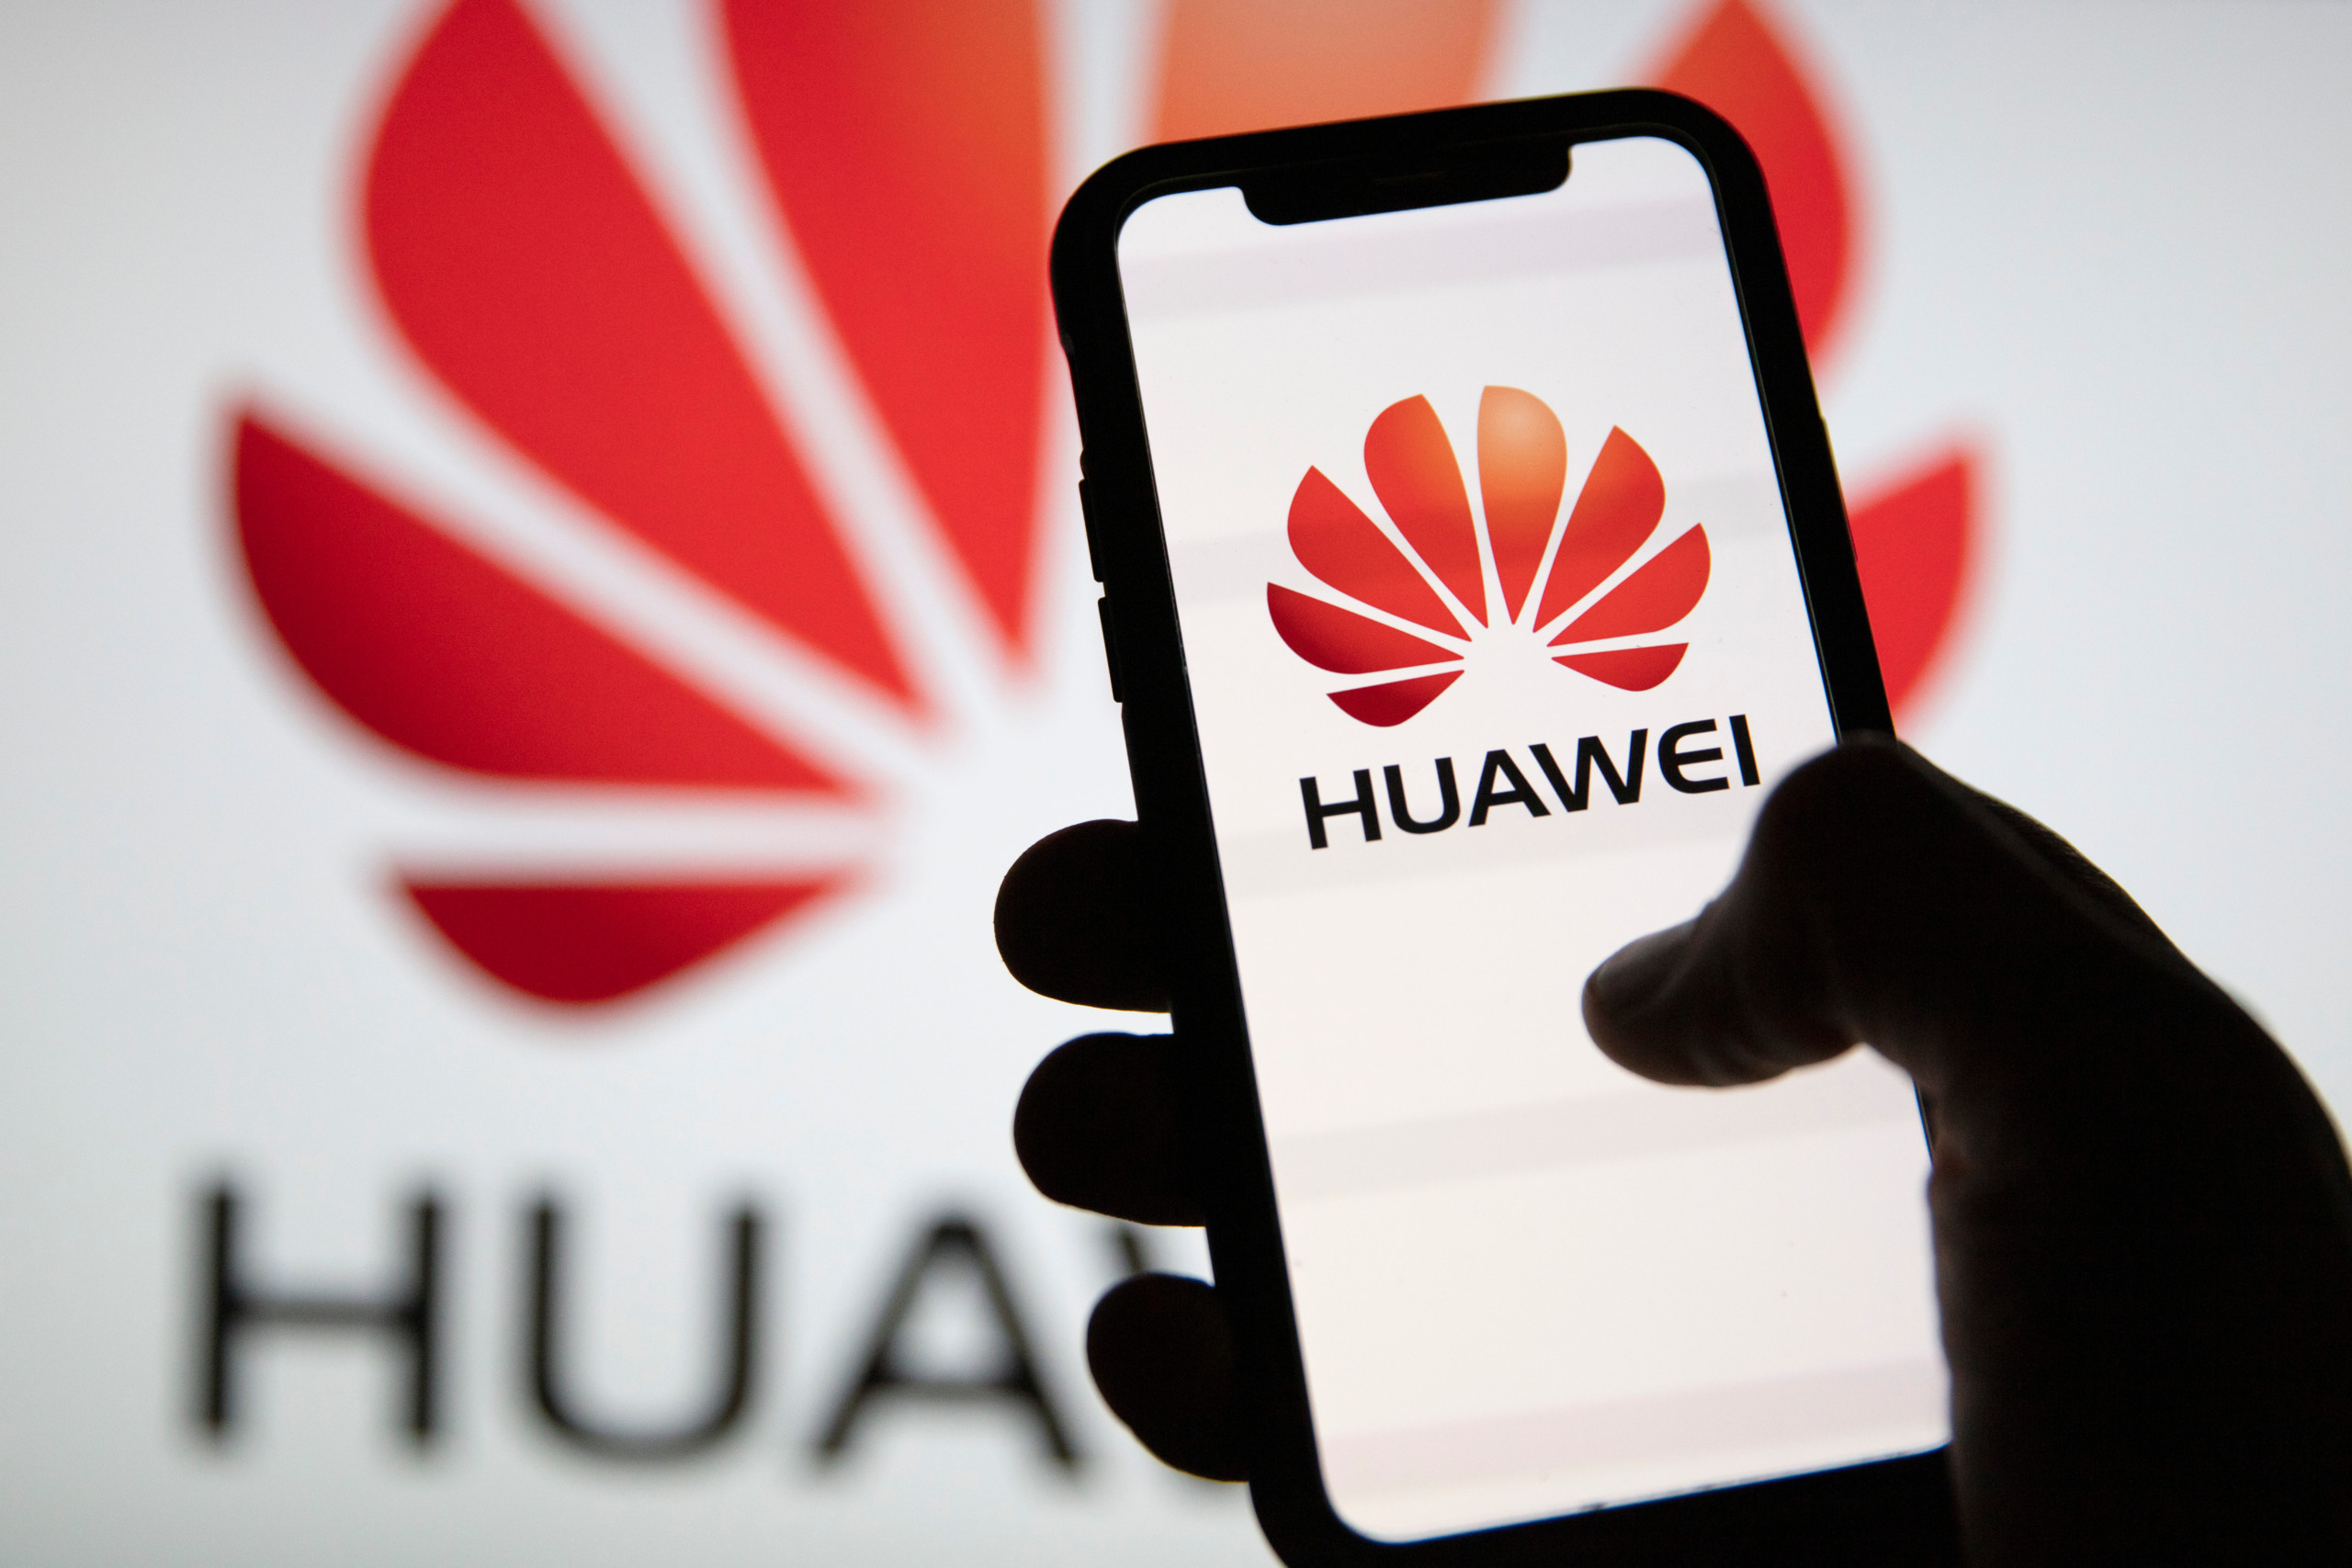 Nach Chip-Durchbruch bringt Huawei neue Handys auf den Markt, um Apple in China herauszufordern